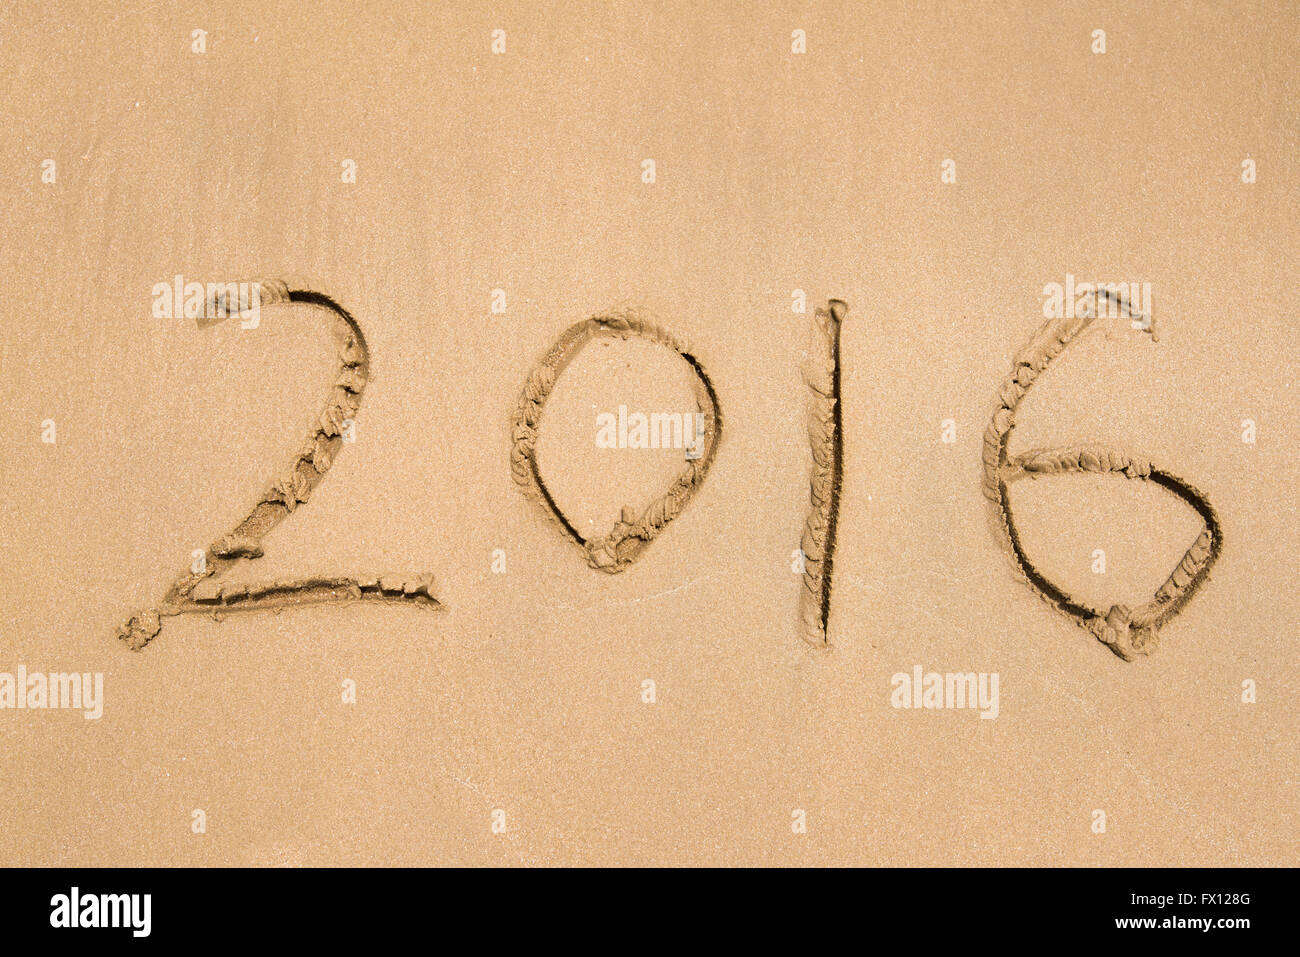 Année 2016 écrit à la main sur le sable blanc en face de la mer Banque D'Images